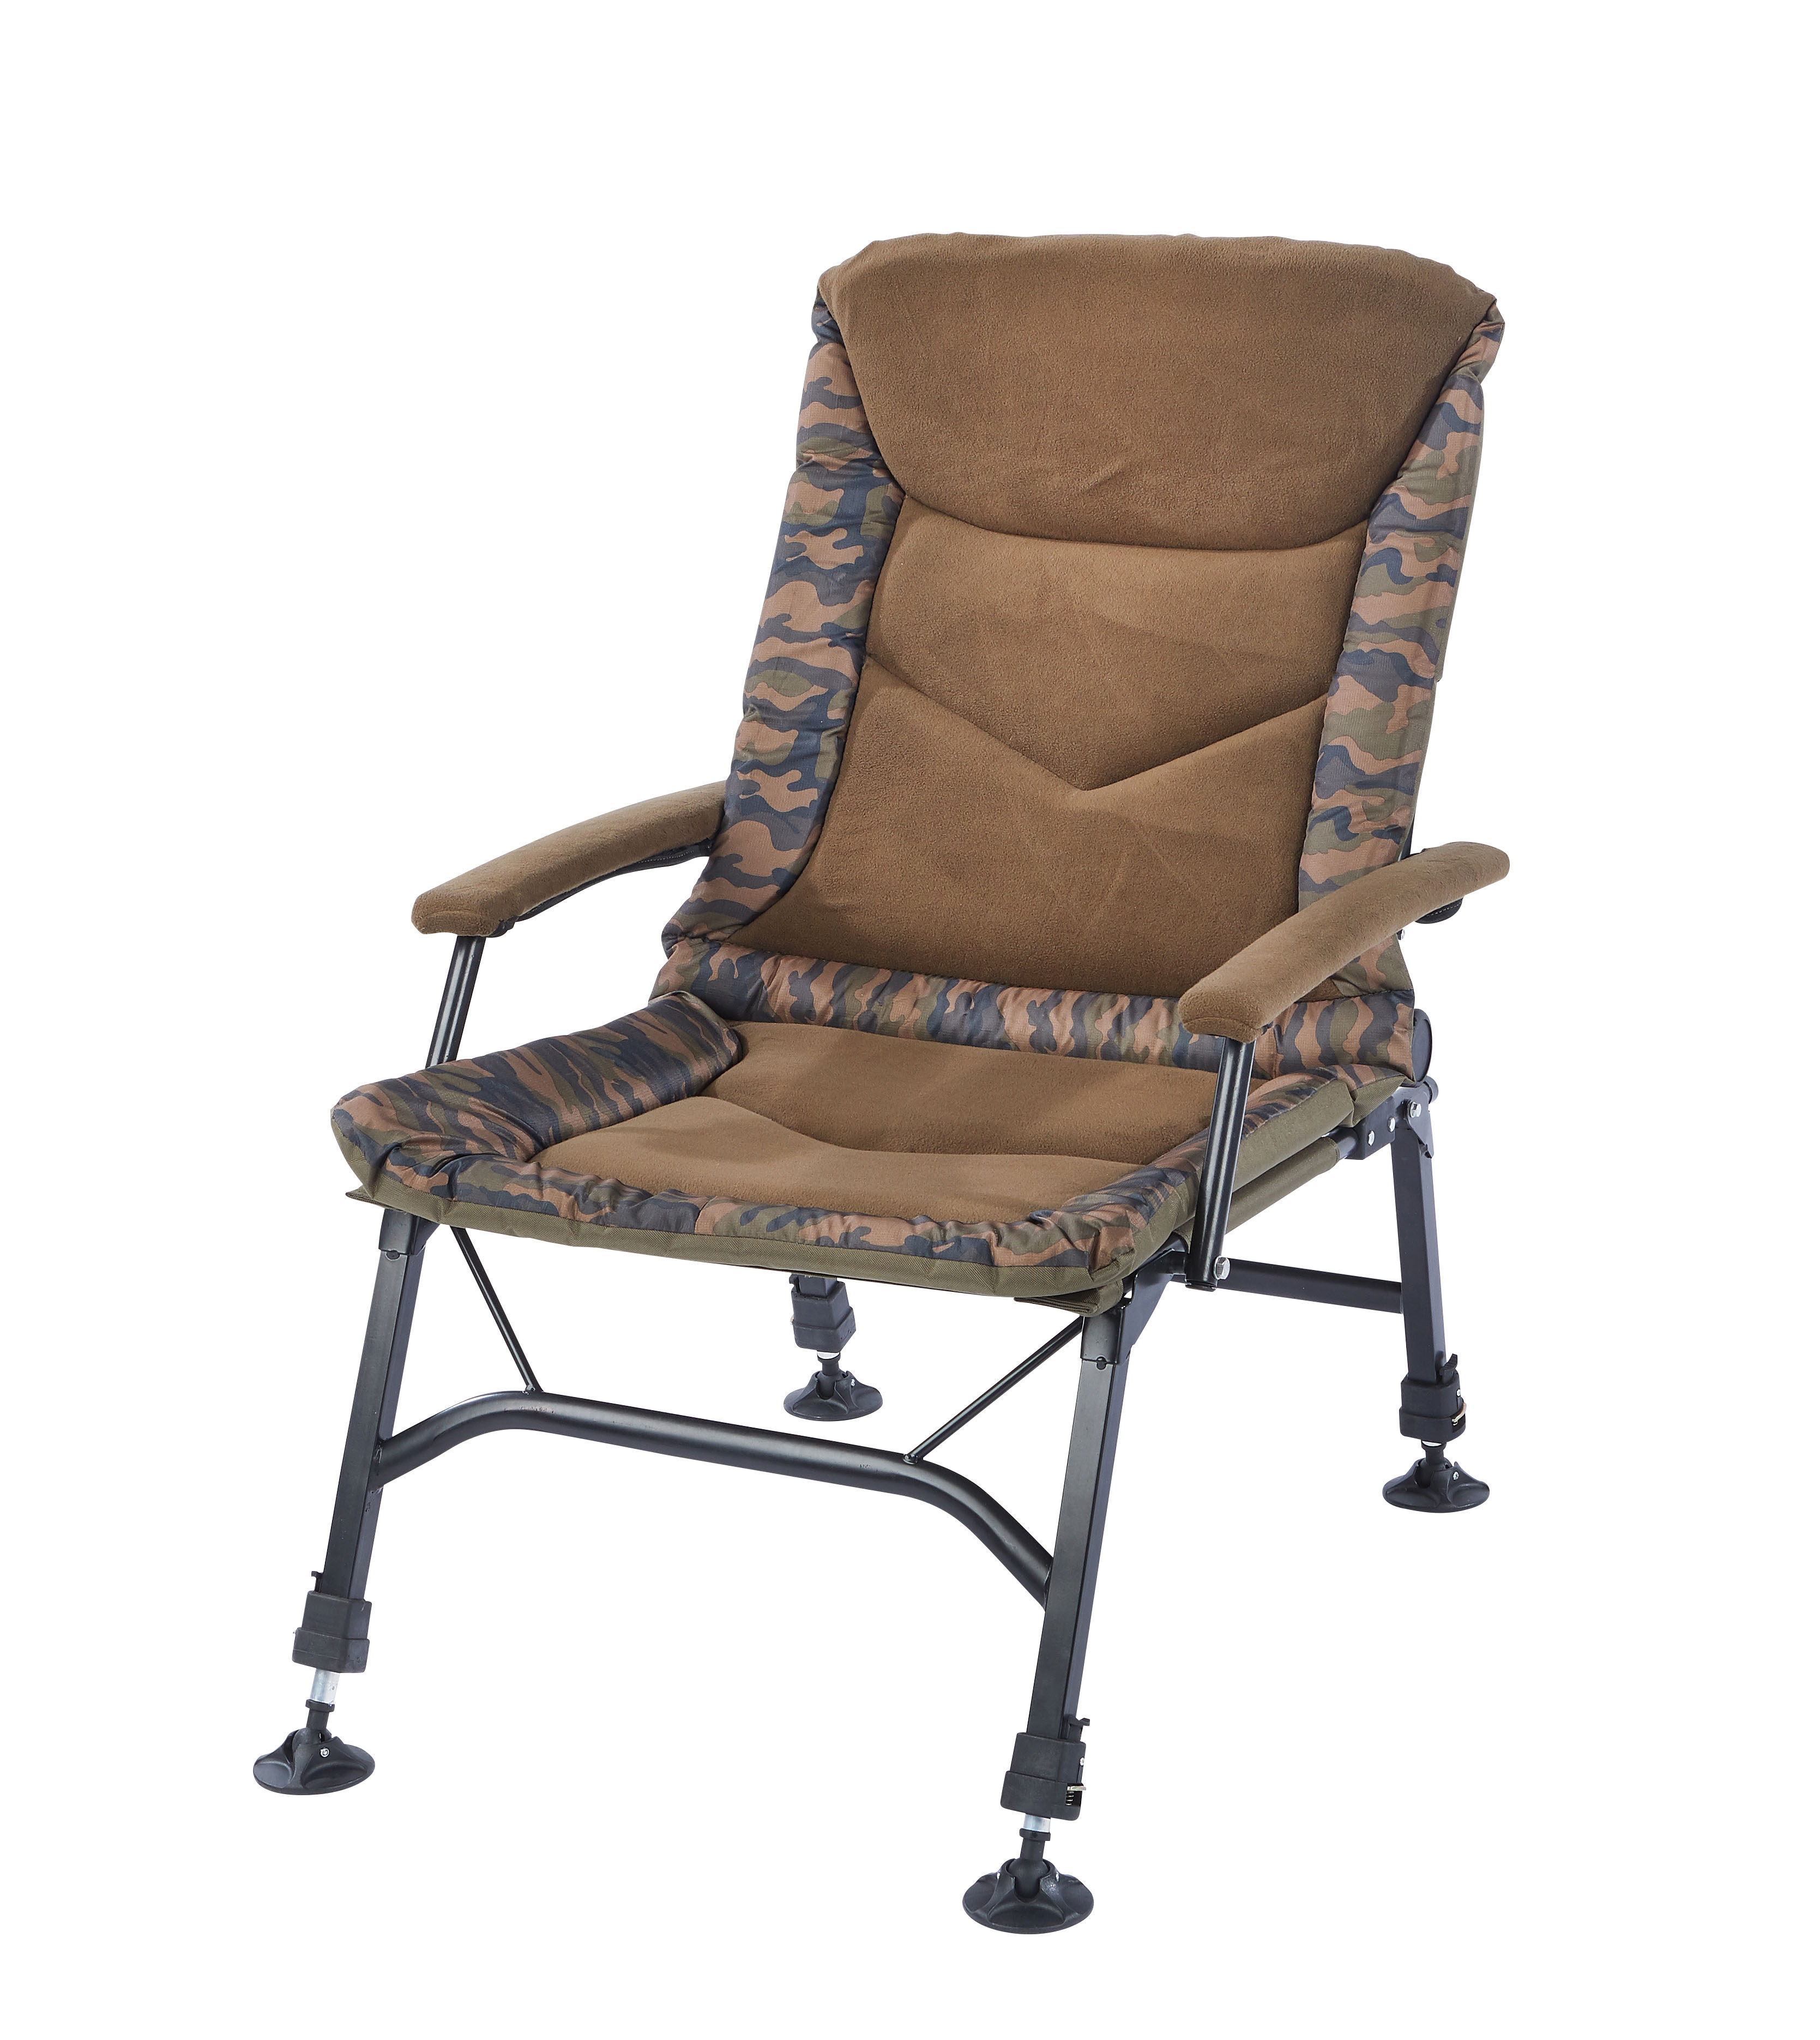 Mostal Camou Stuhl Big mit gepolsterten Armlehnen Angelstuhl bis 120kg Chair 